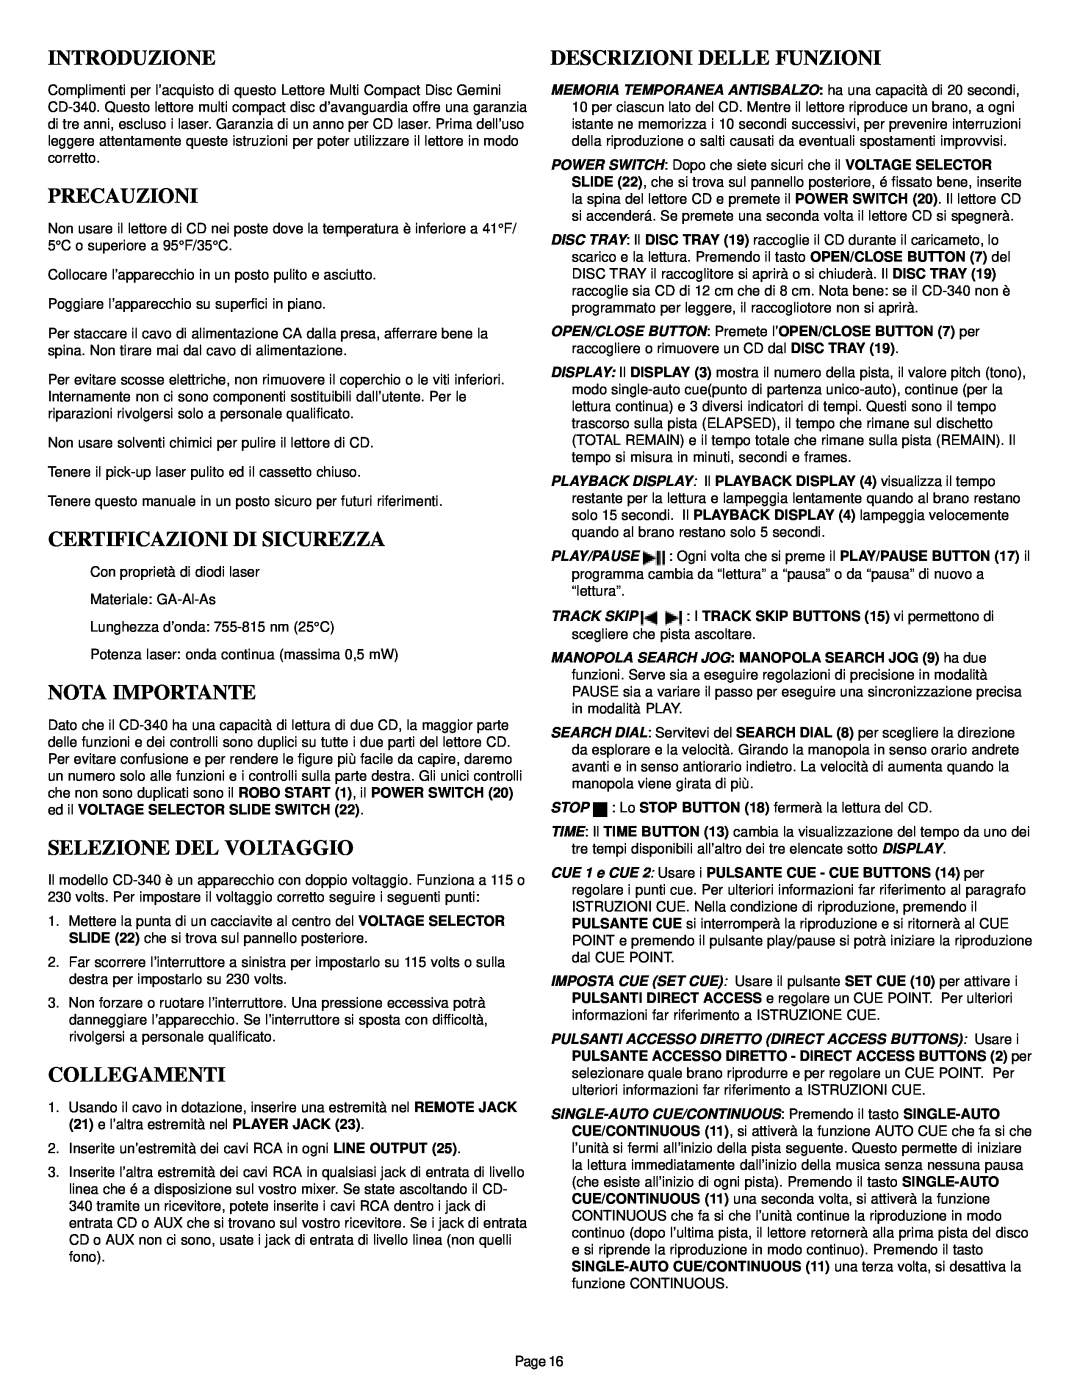 Gemini CD-340 manual Introduzione, Precauzioni, Certificazioni Di Sicurezza, Selezione Del Voltaggio, Collegamenti 